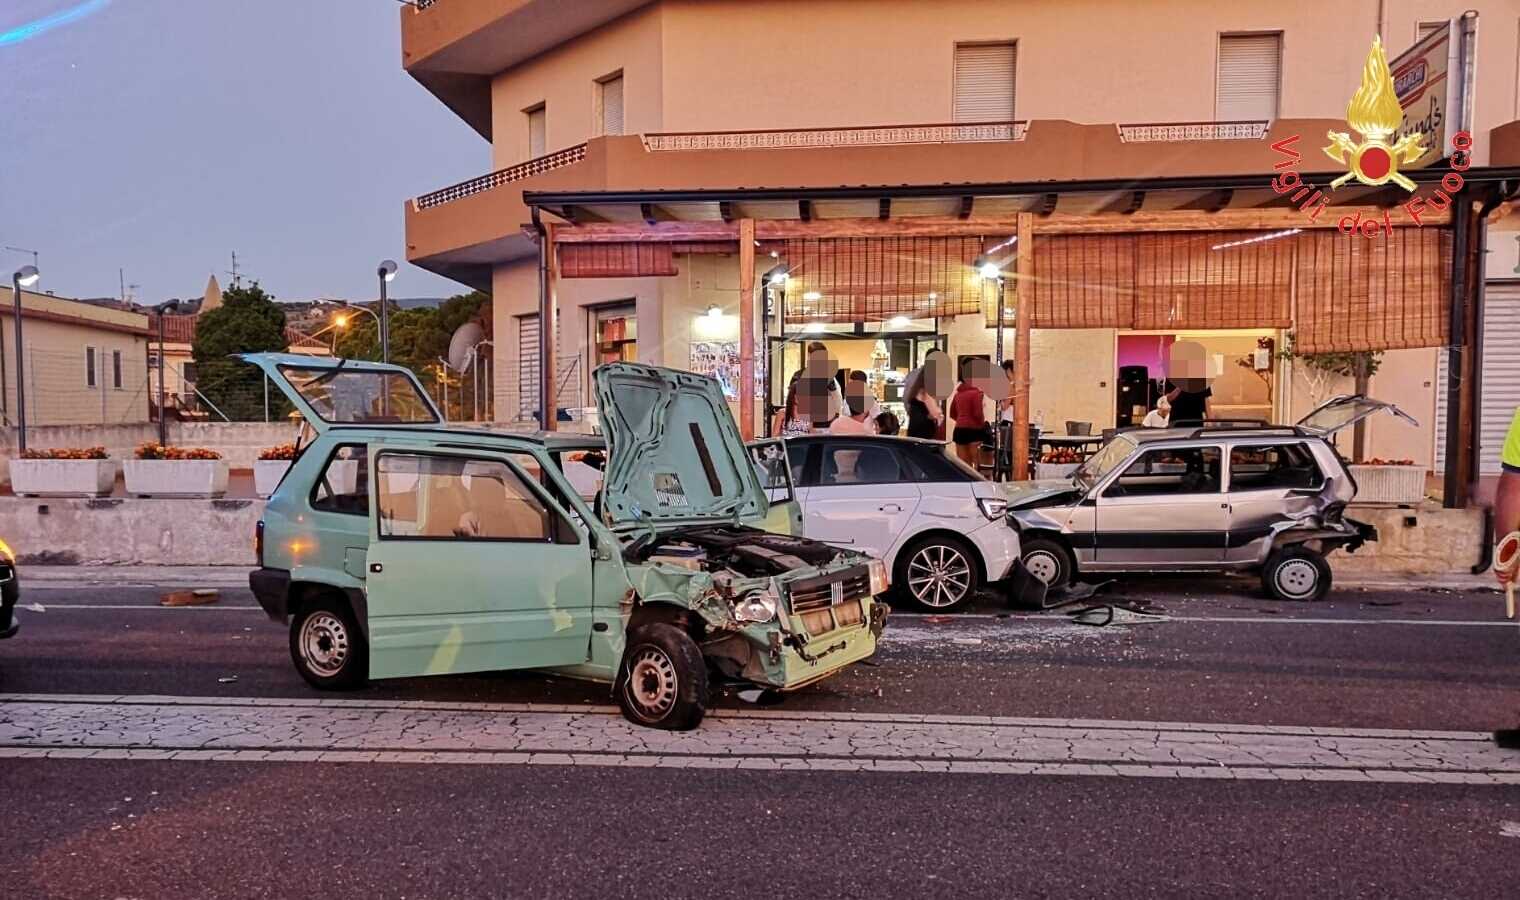 Incidenti Stradali: SS106 Fiat Panda violento impatto su due auto, due feriti intervento dei VVF